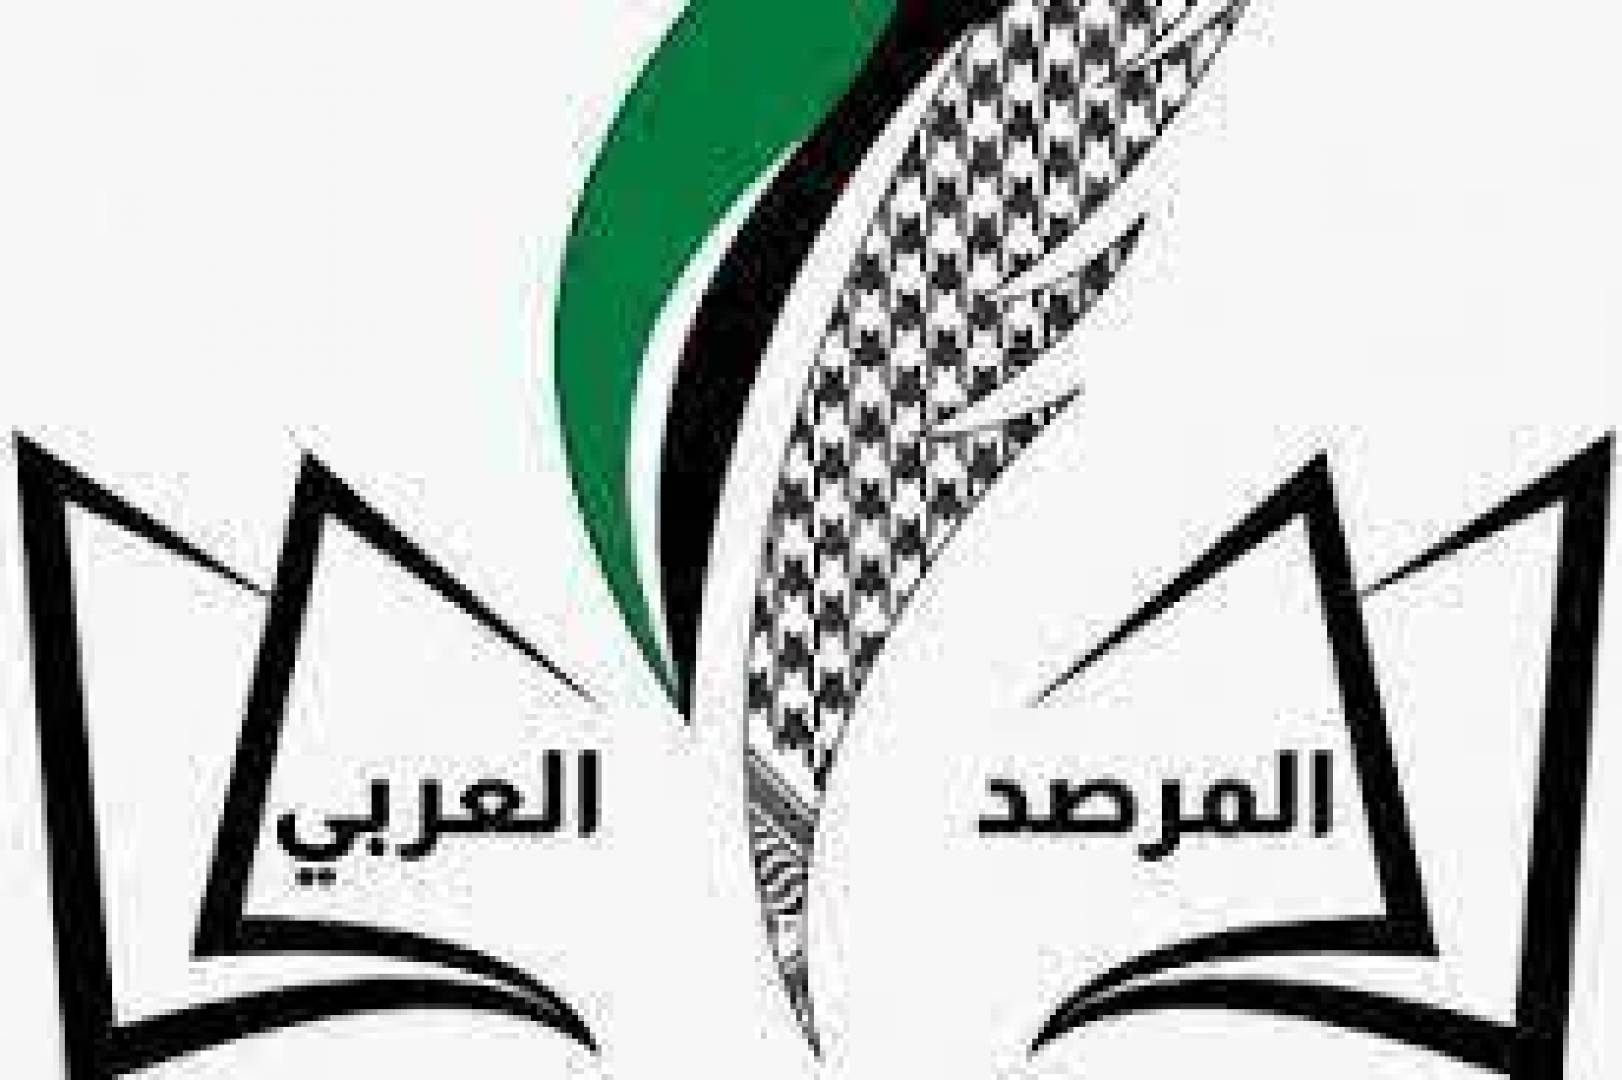 المرصد العربي لحقوق الإنسان والمواطنة يوقع على عريضة بالتعاون مع 181 شبكة ومنظمة حقوقية ومدنية عريضة لمحاسبة وفرض عقوبات على الكيان الصهيوني من قبل الأمم المتحدة.